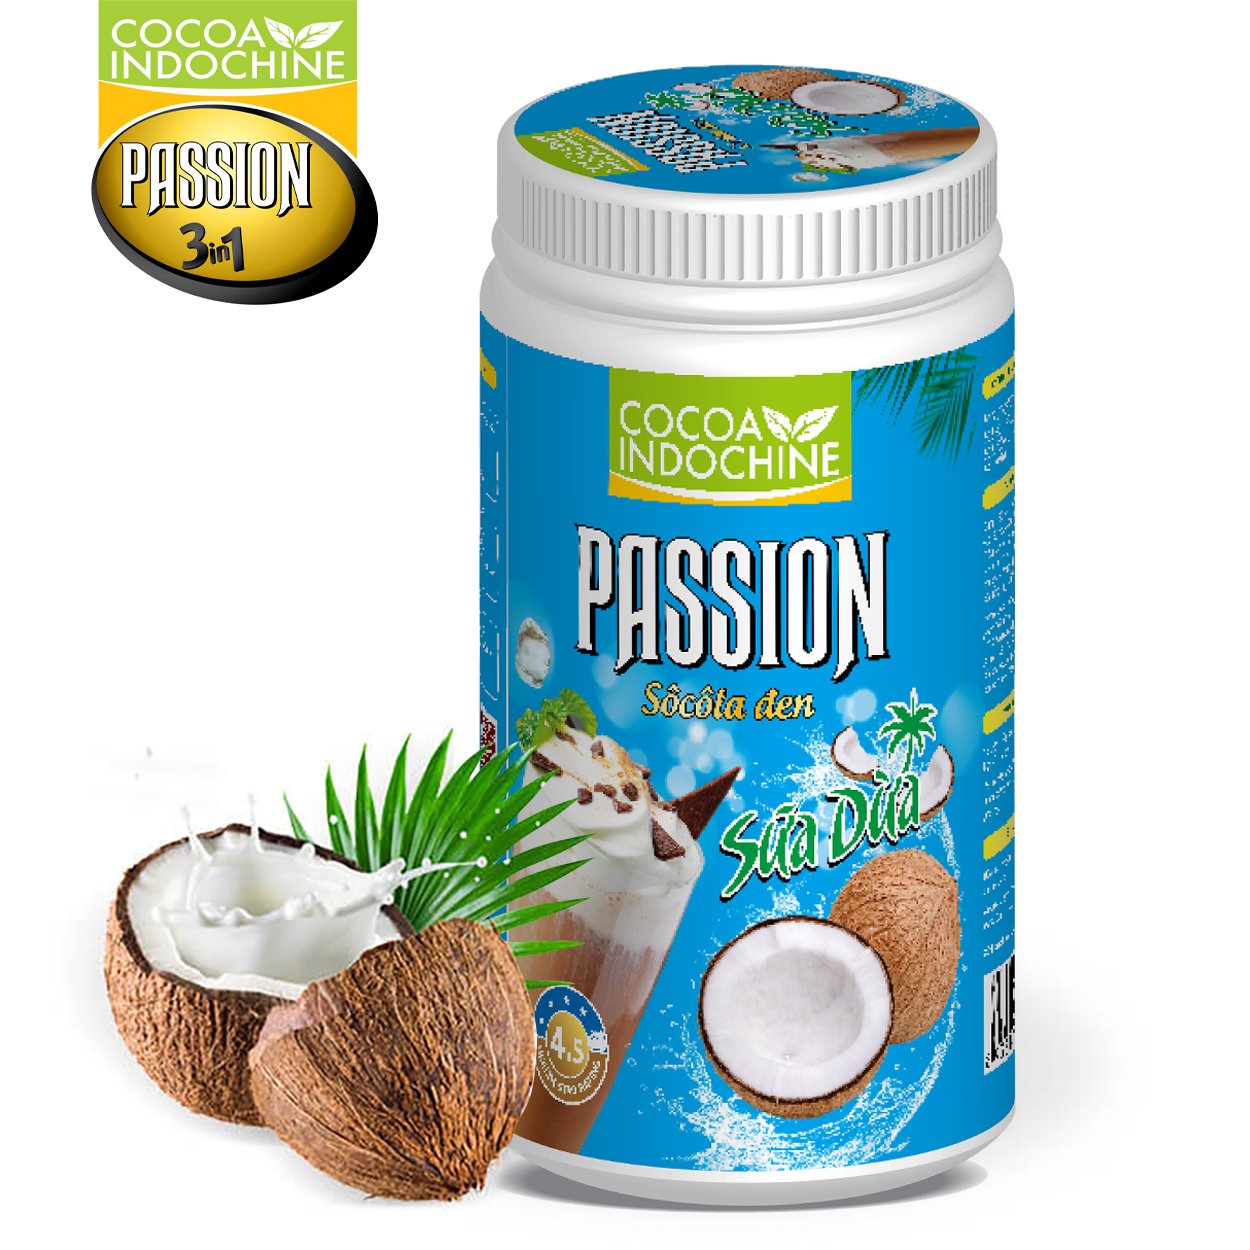 Hình ảnh Bột ca cao sữa dừa Passion - Chuyên pha chế trà sữa, milo dầm, thức uống sô cô la cacao thơm ngon tiện lợi - Hũ 750g